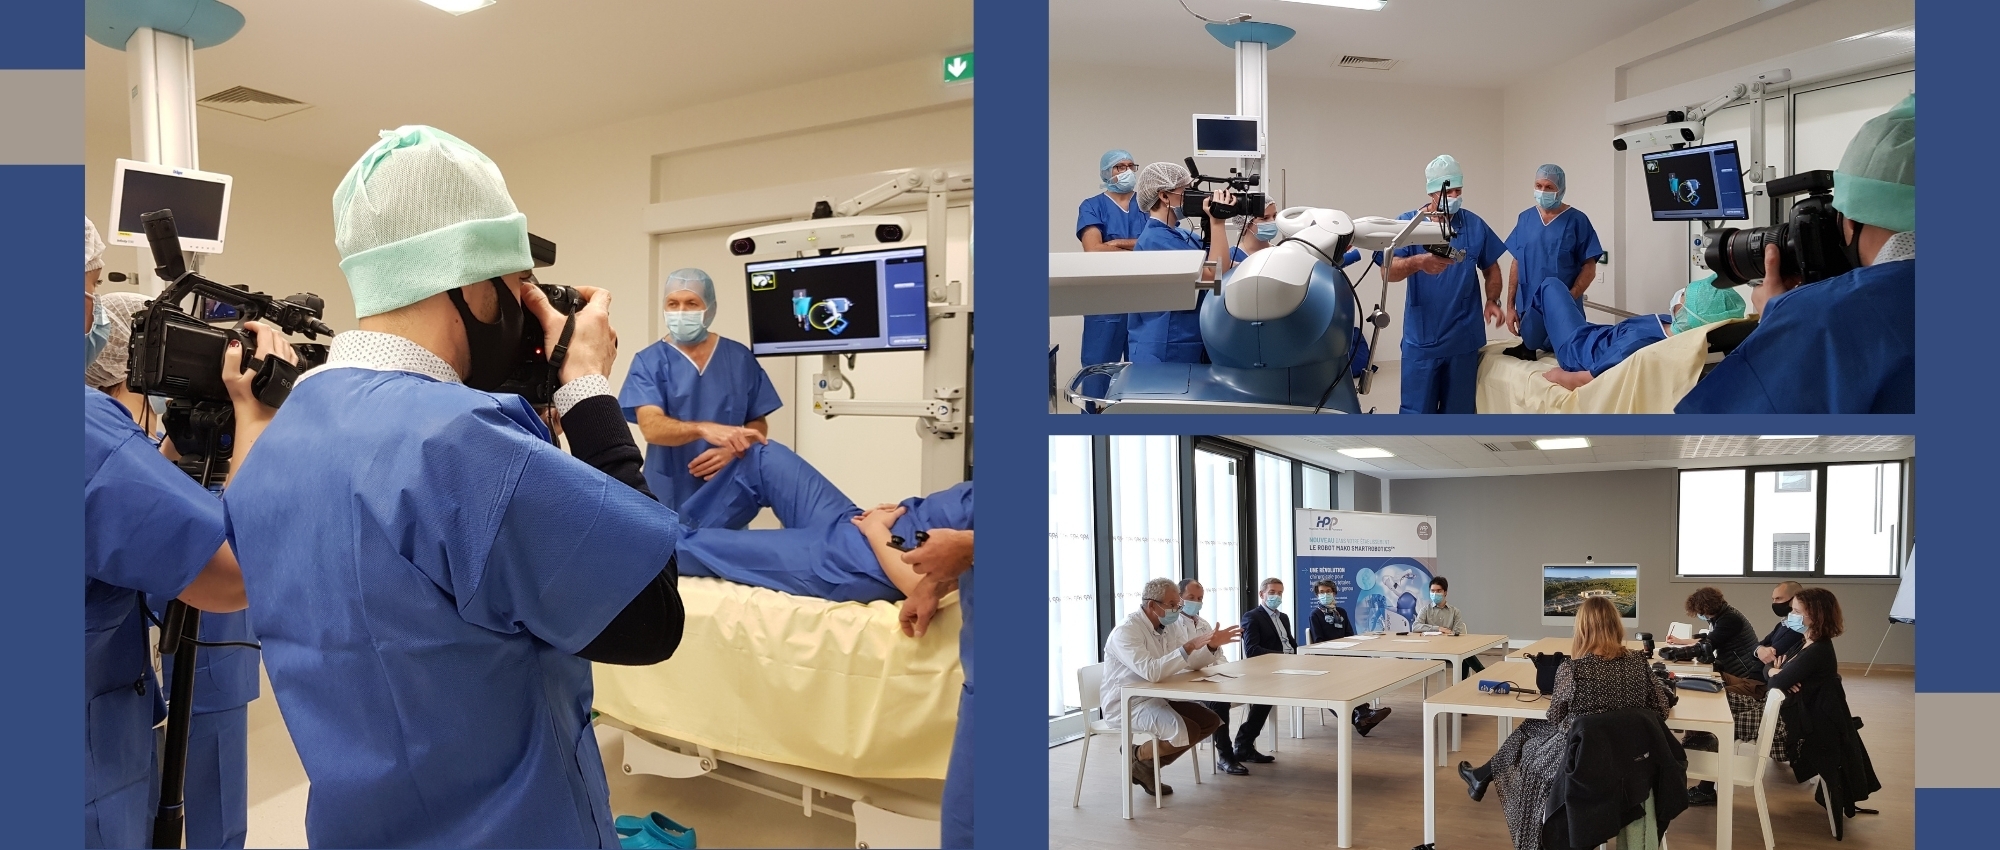 L'hôpital Privé de Provence s'équipe du robot Mako